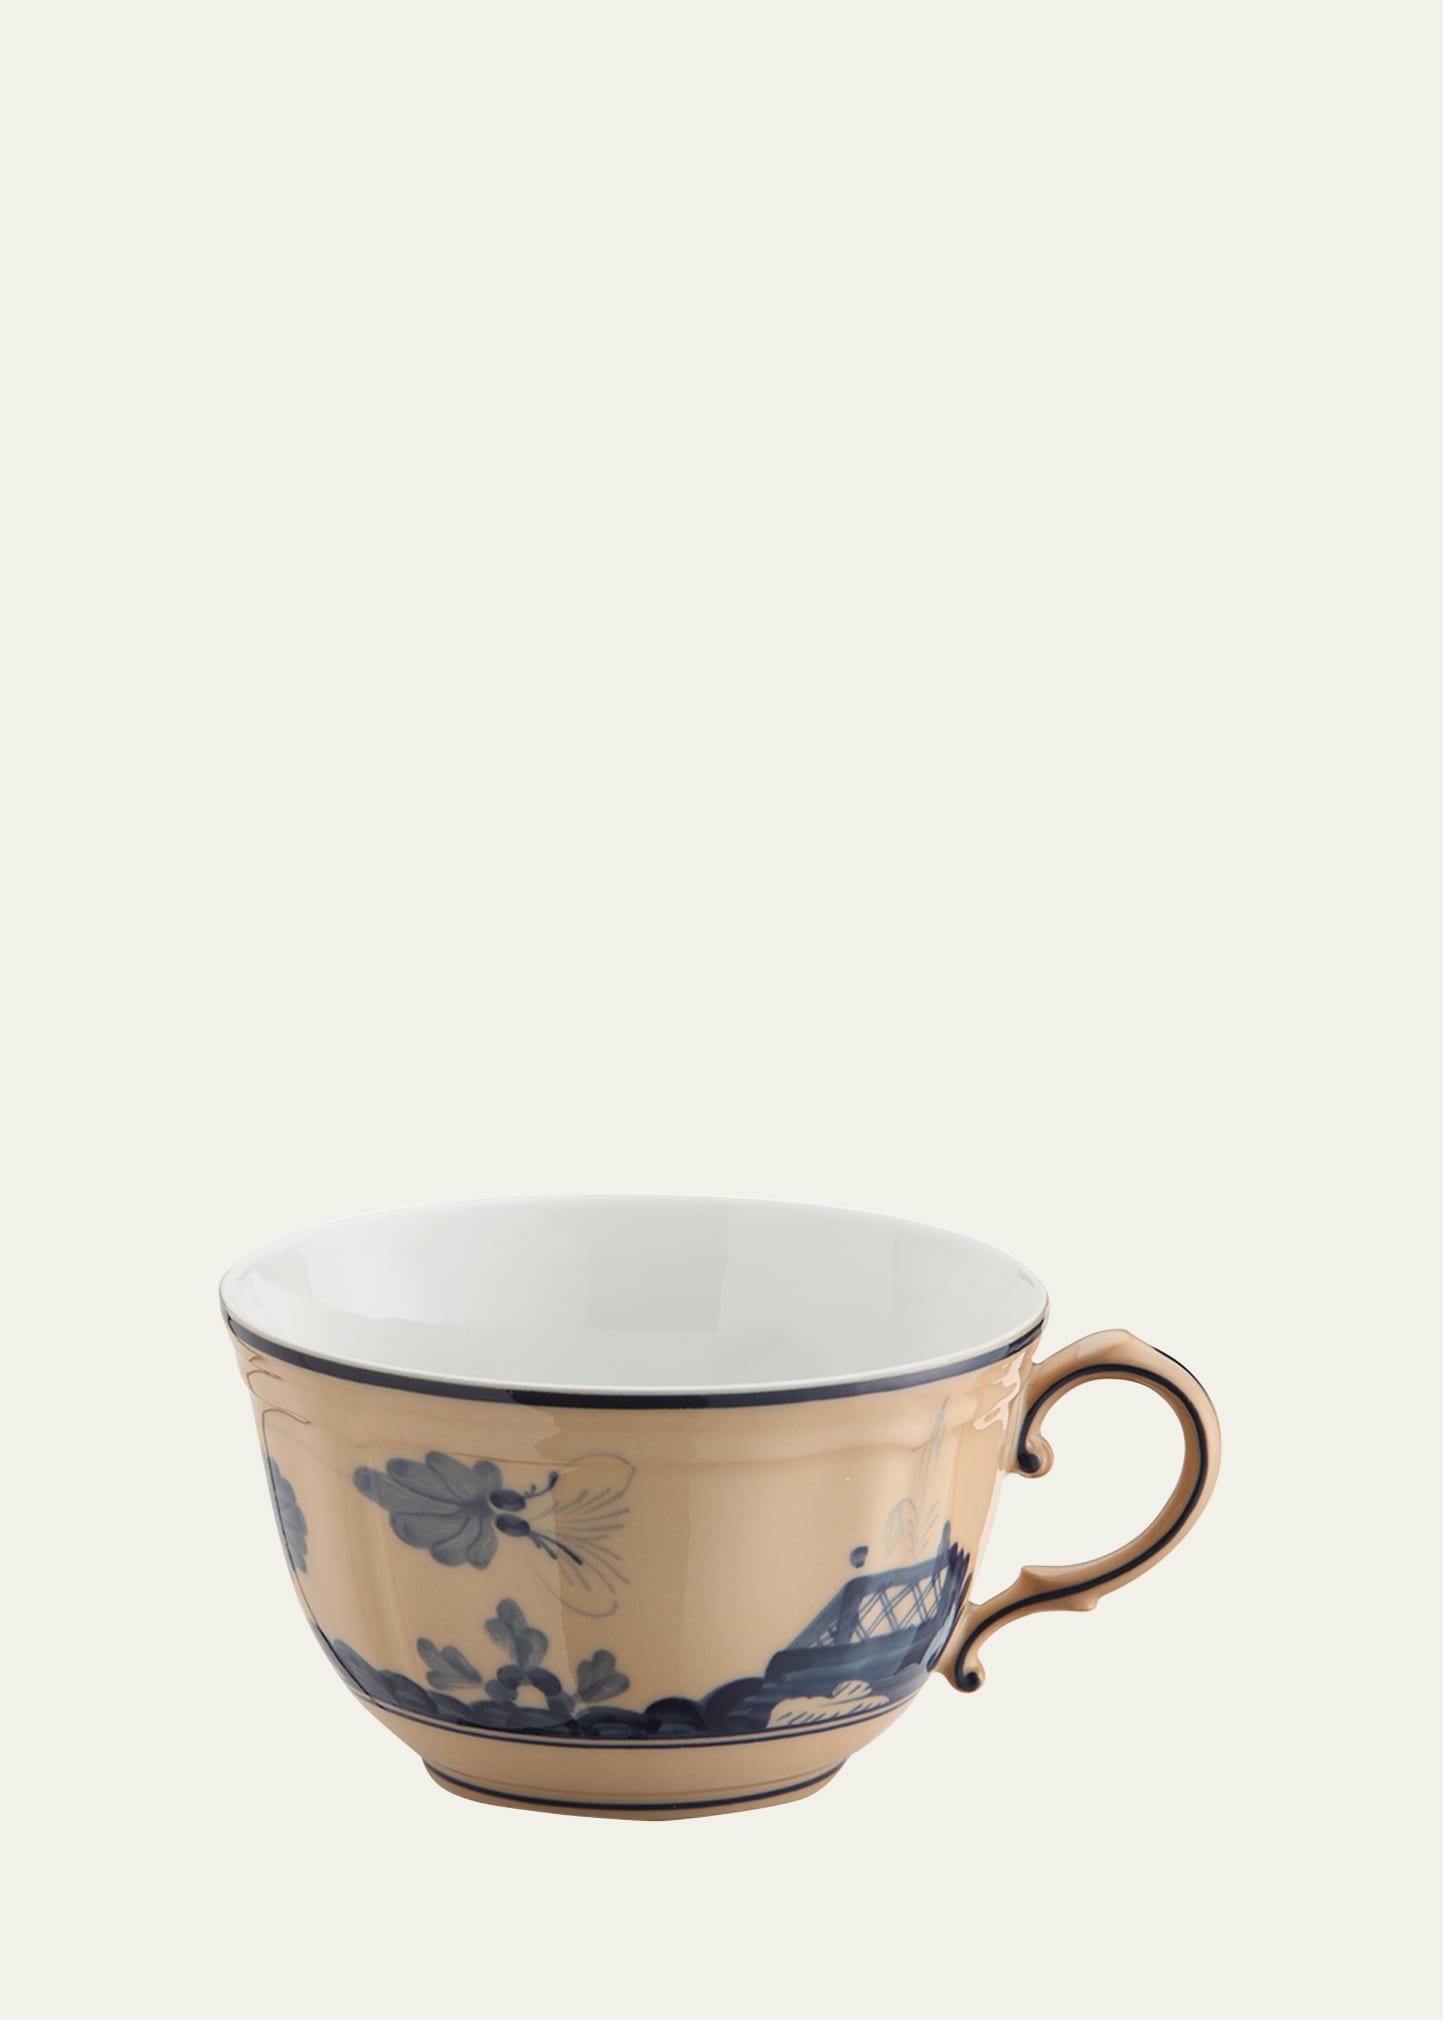 Ginori 1735 Orcipria Tea Cup In Neutral